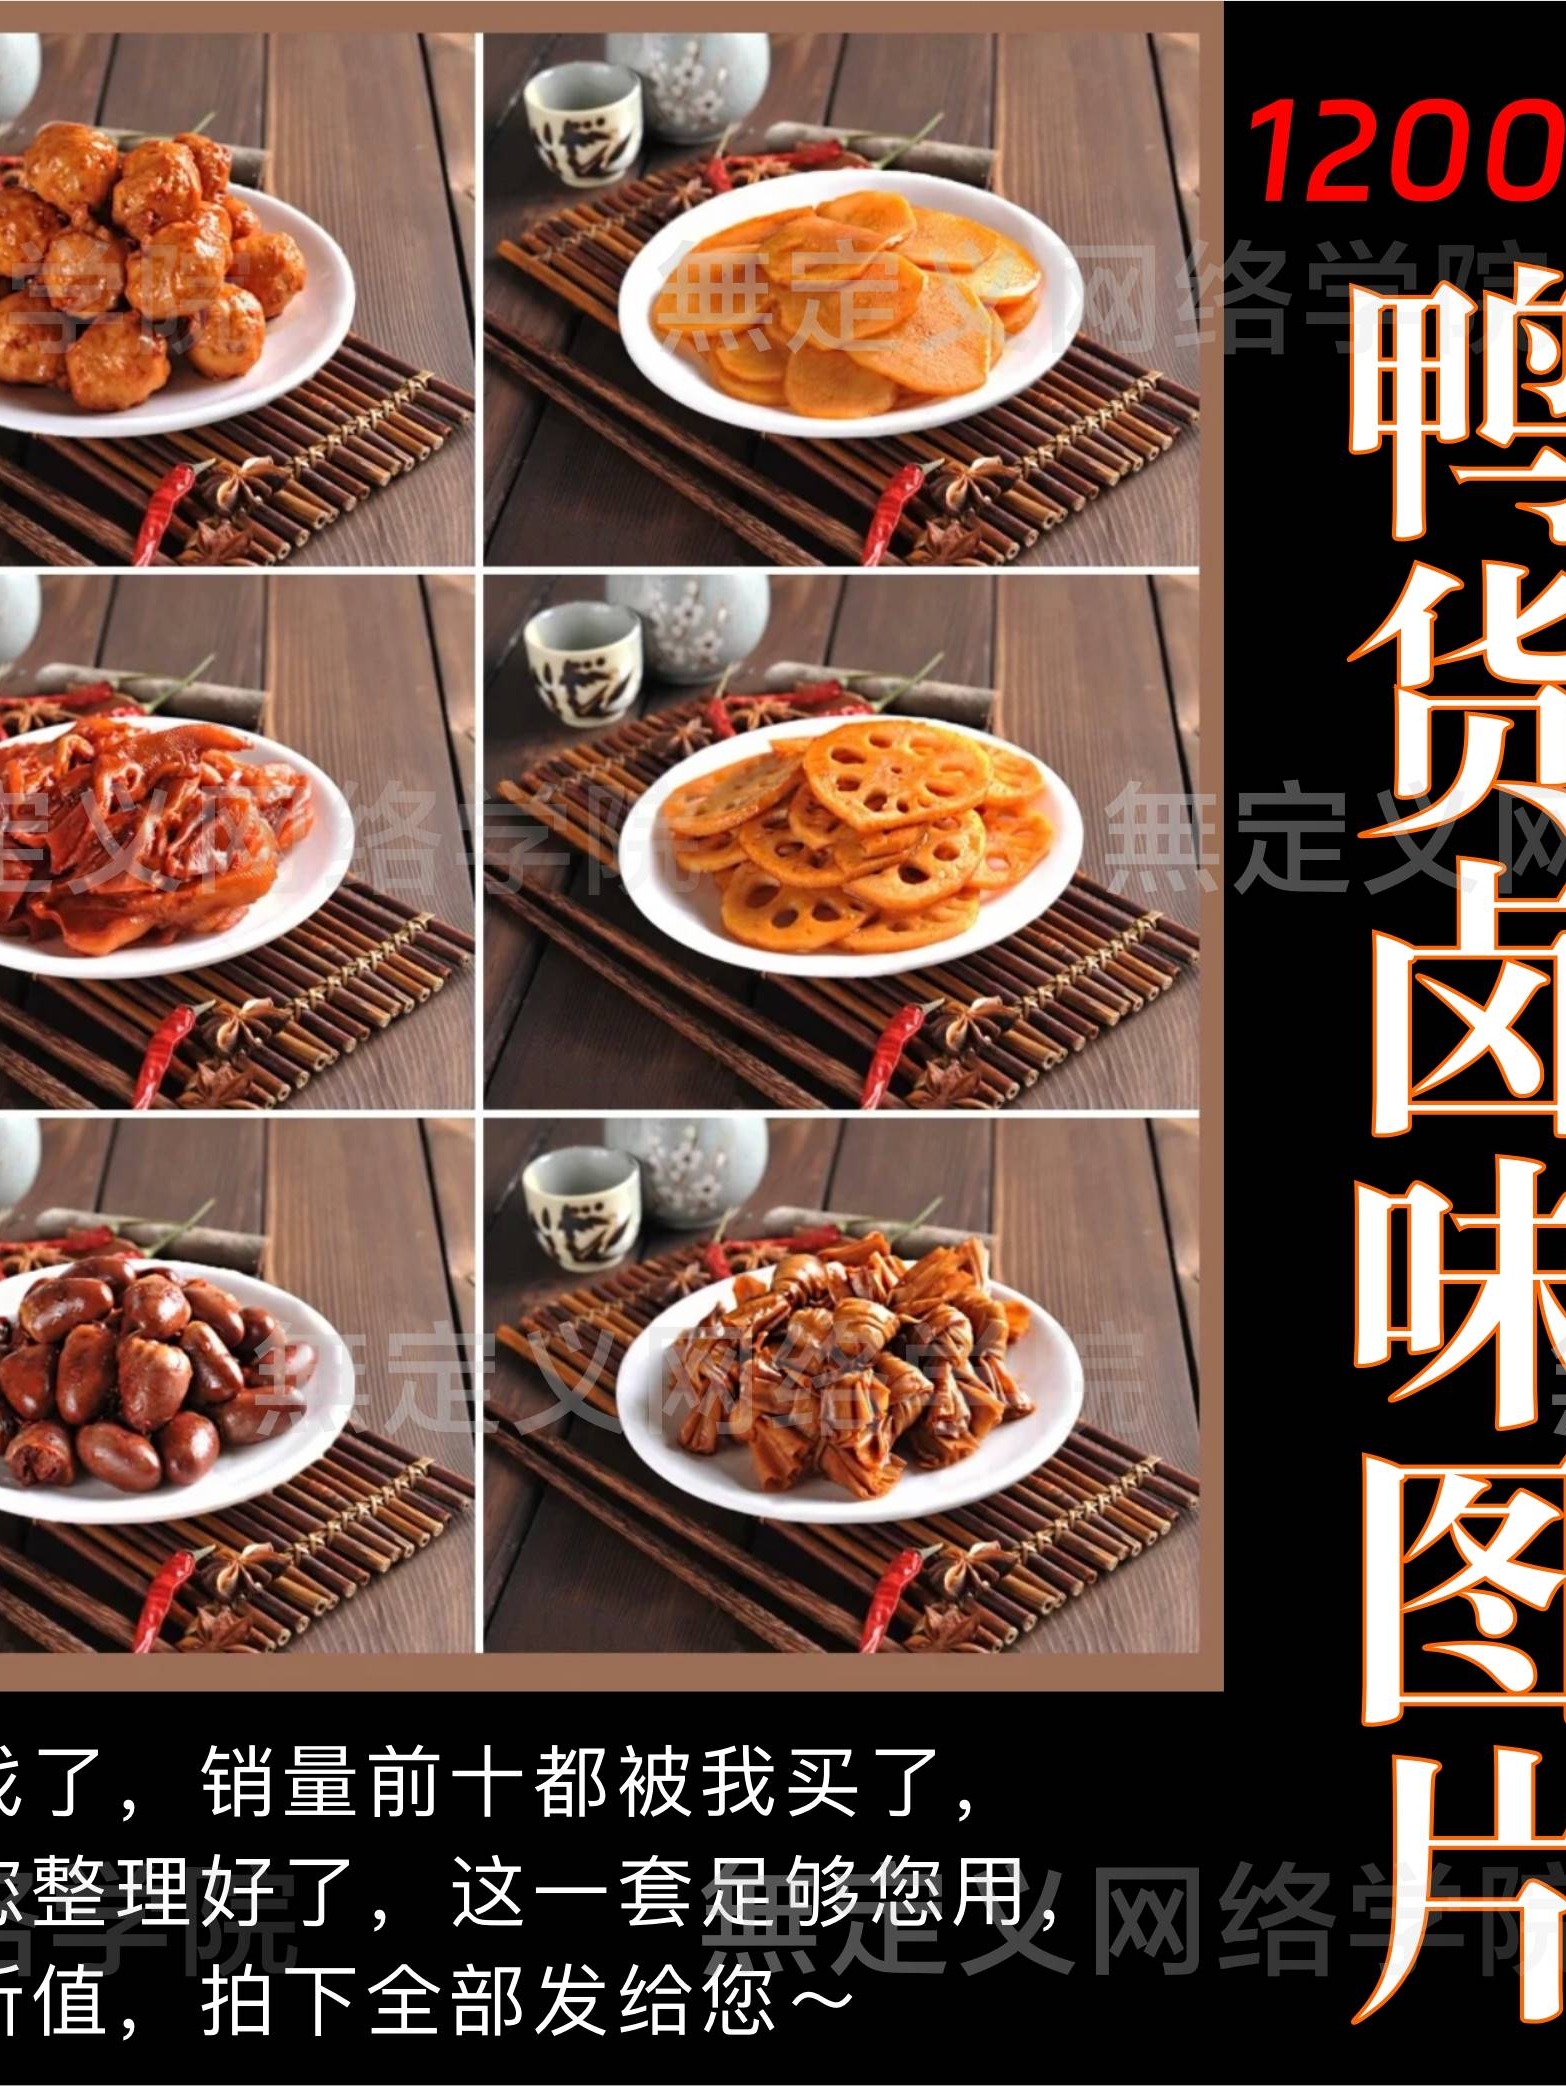 鸭货图片卤菜卤味熟食烧腊凉菜卤水高清广告照片美团外卖菜品素材